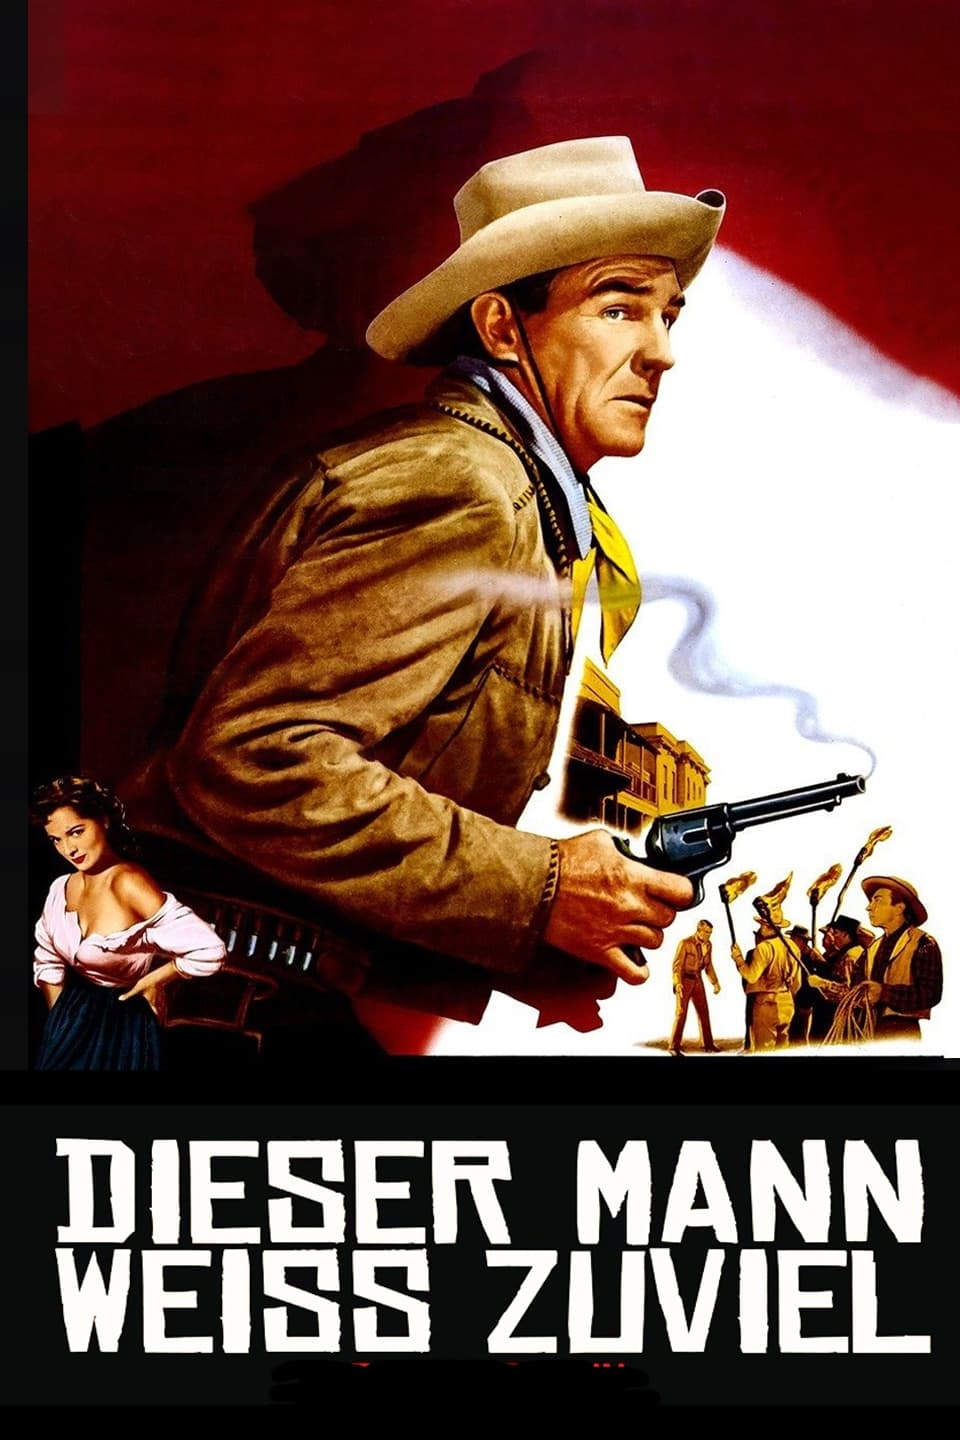 Riding Shotgun (1954)